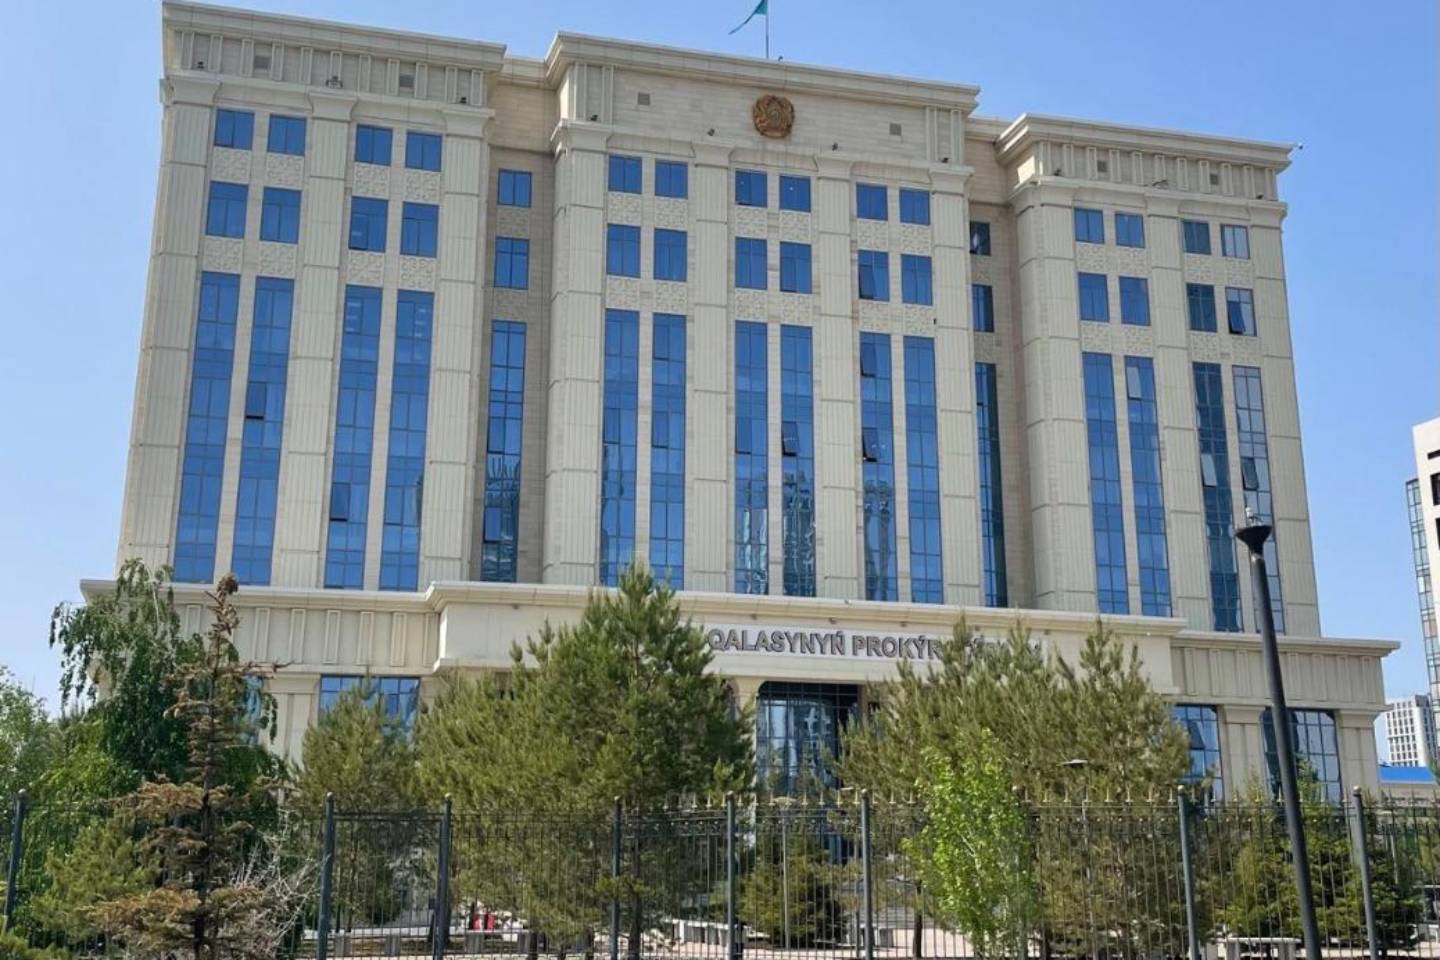 Происшествия в Казахстане и мире / Криминальные новости / Астанинские прокуроры отменили незаконные госзакупки почти на 4 млрд тенге